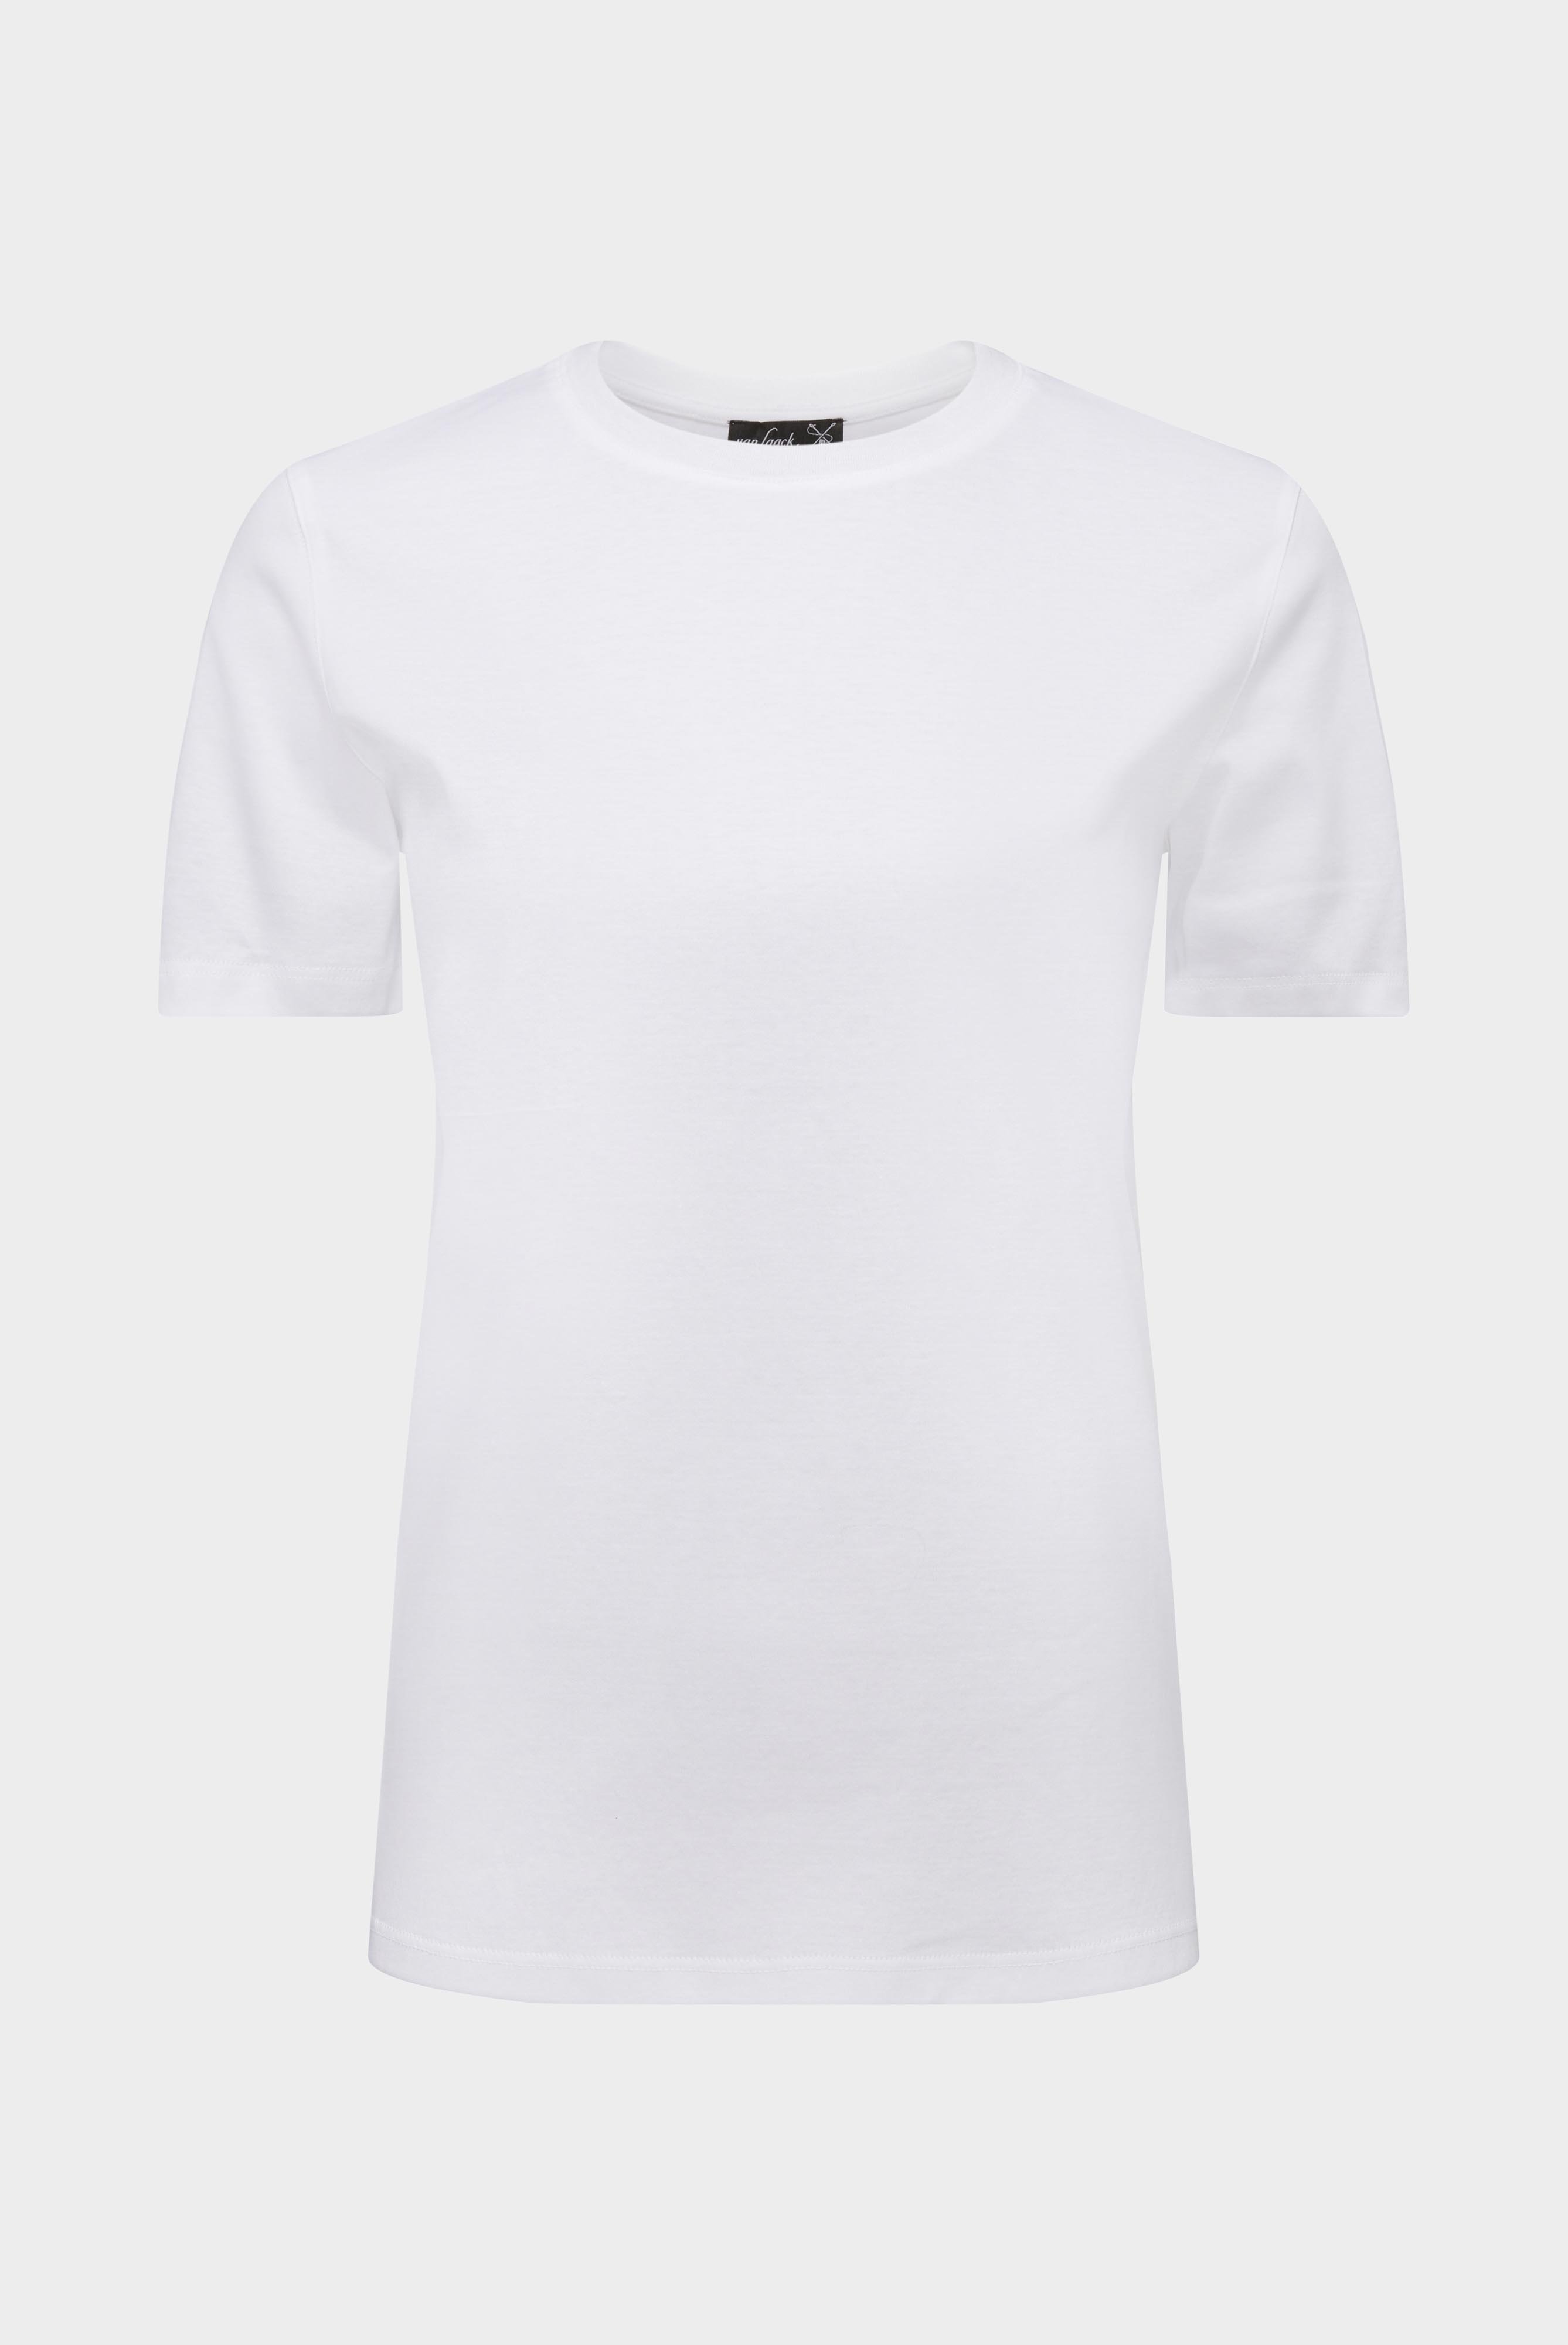 Tops & T-Shirts+Jersey T-Shirt+05.6384.18.180031.000.42